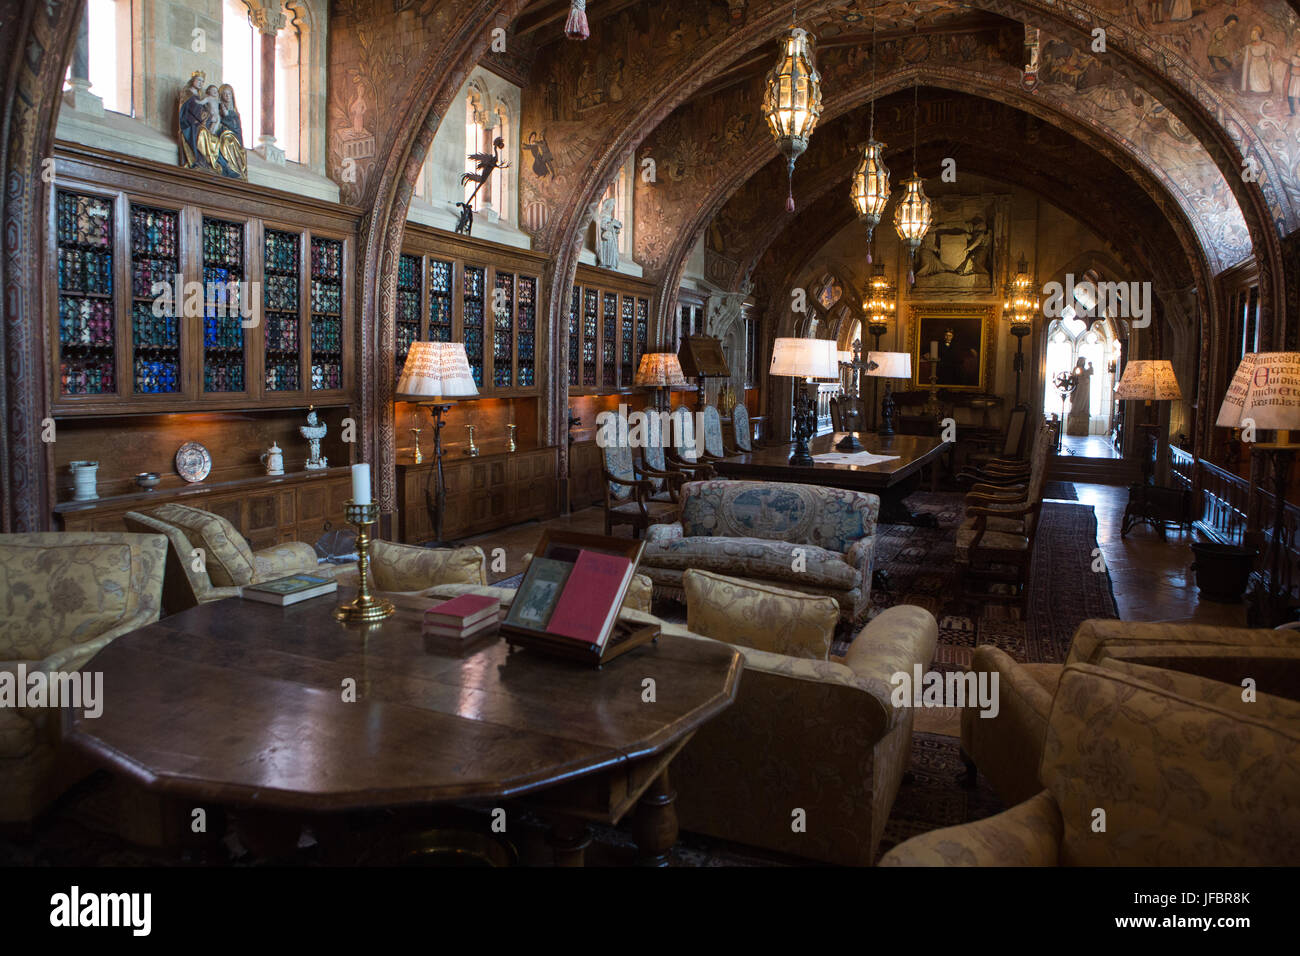 Una libreria e sala decorata con mobili, artwork, libri e ornati in apparecchi di illuminazione. Foto Stock